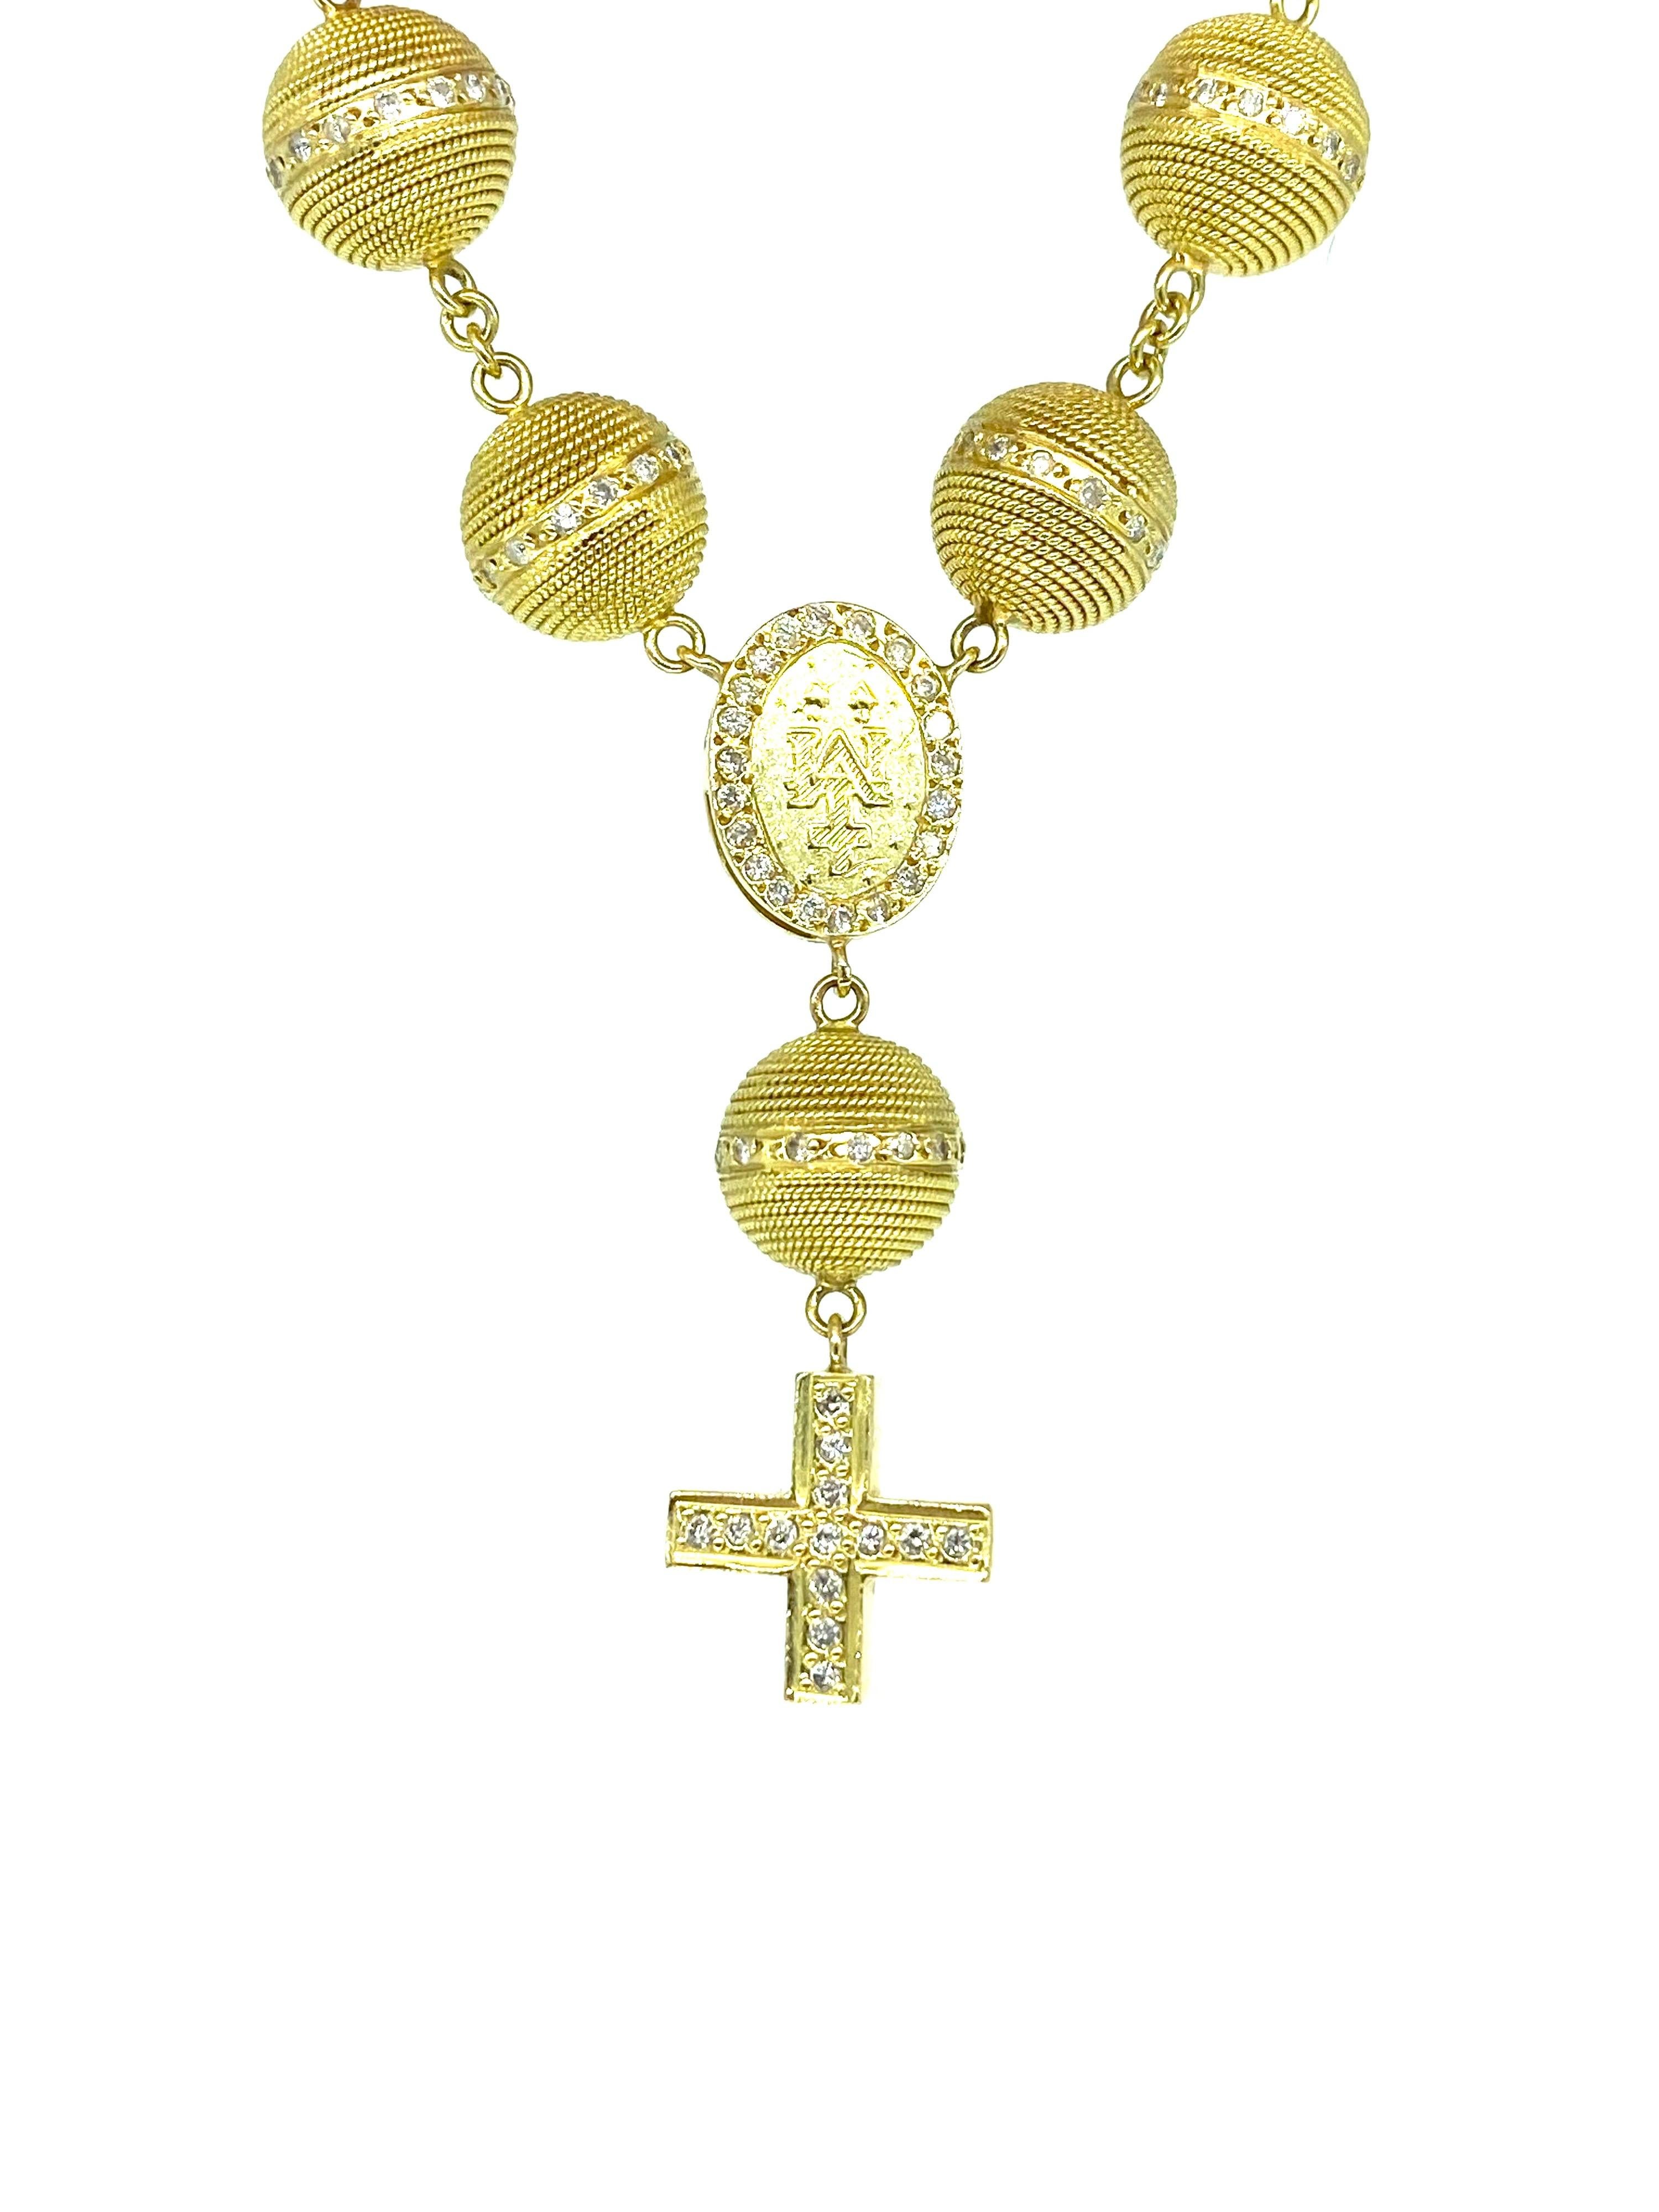 18k gold rosary bracelet